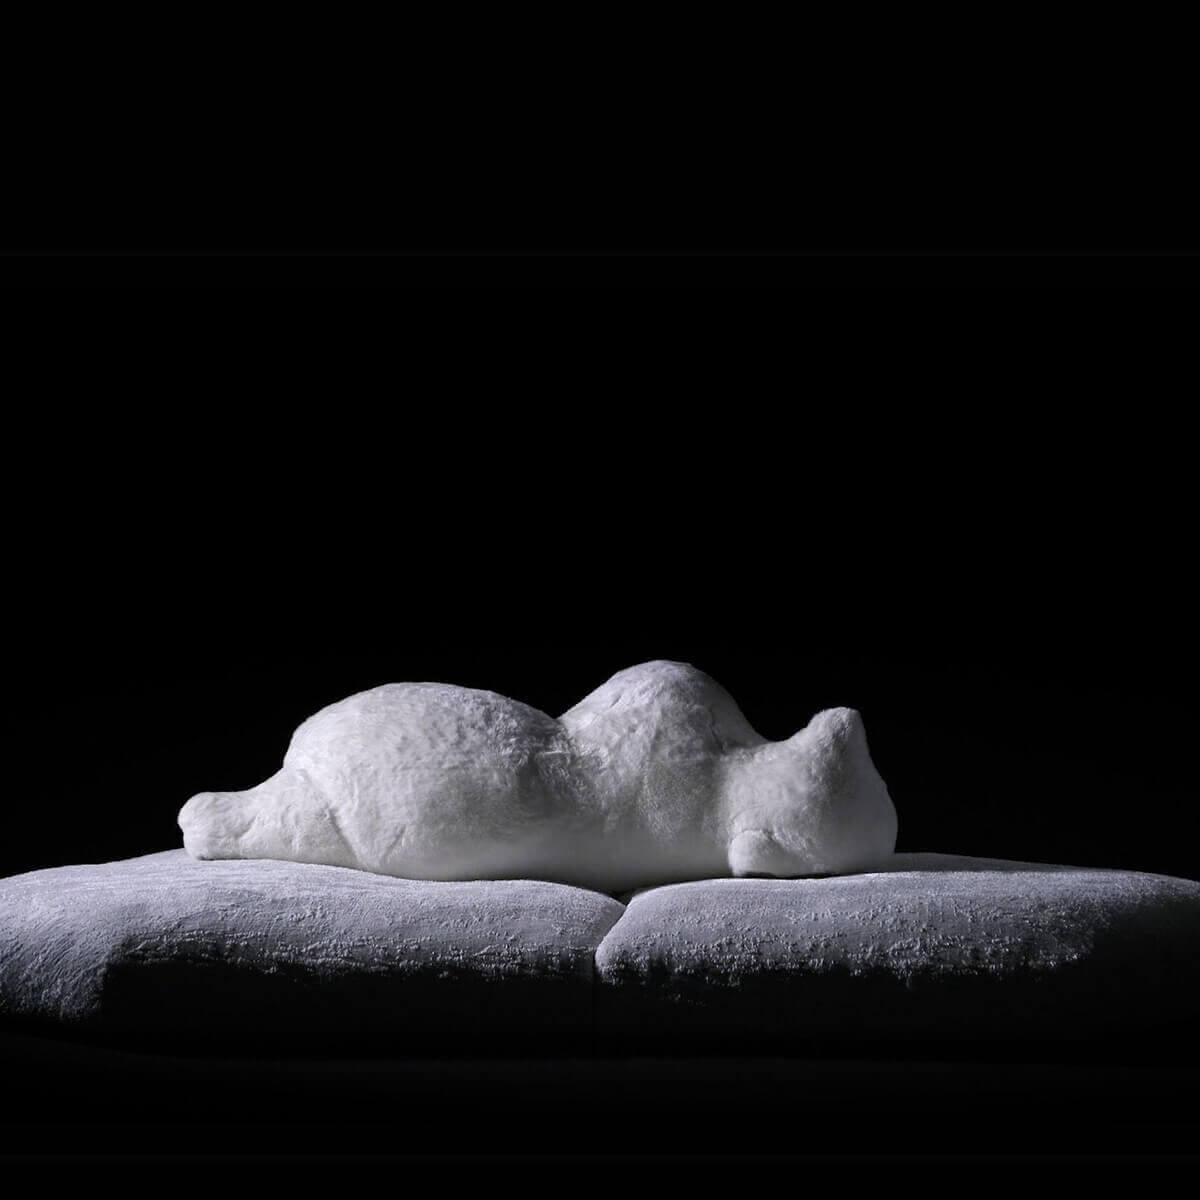 AuroraArray Teddy fabric Sofa - A Soft and Serene Embrace